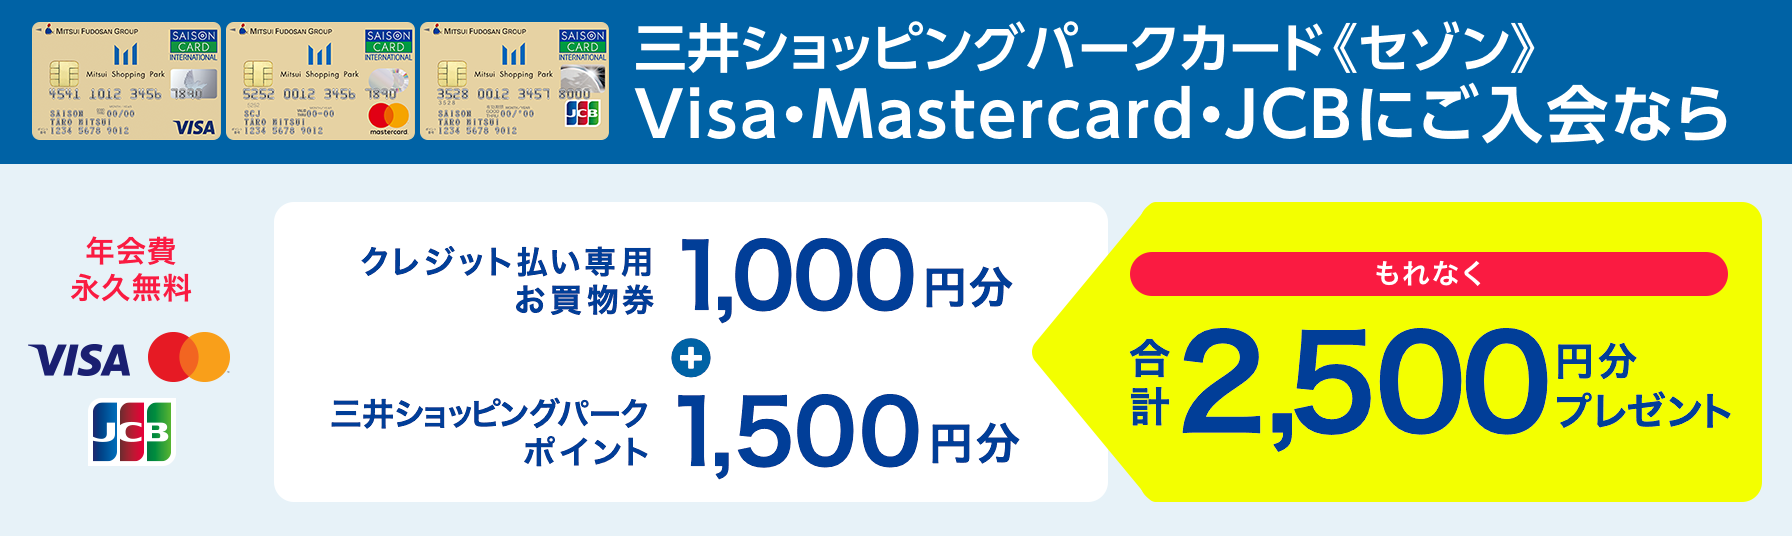 三井ショッピングパークカード《セゾン》Visa・Mastercard・JCBにご入会なら